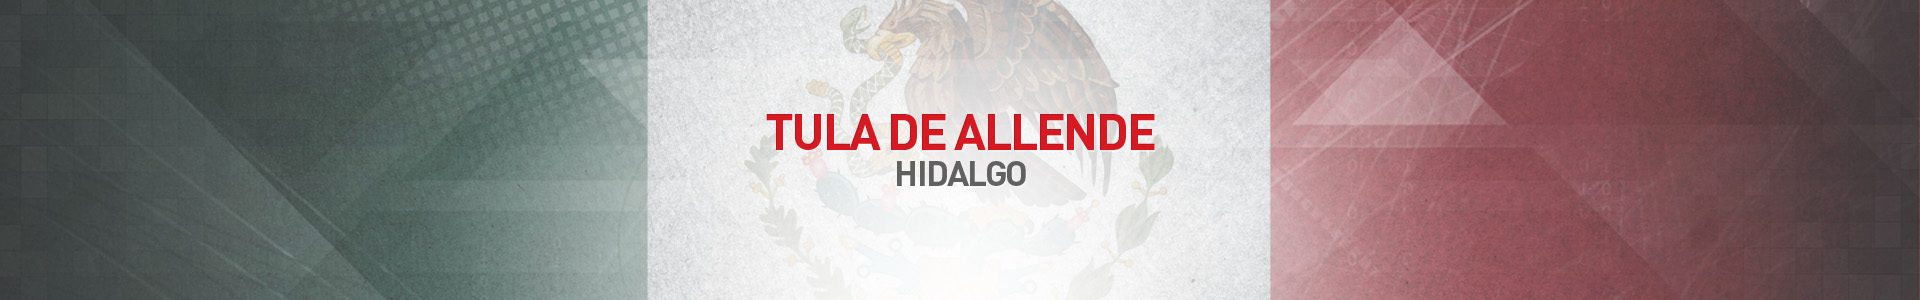 Topo-Cidades-Tula-de-Allende-SBA